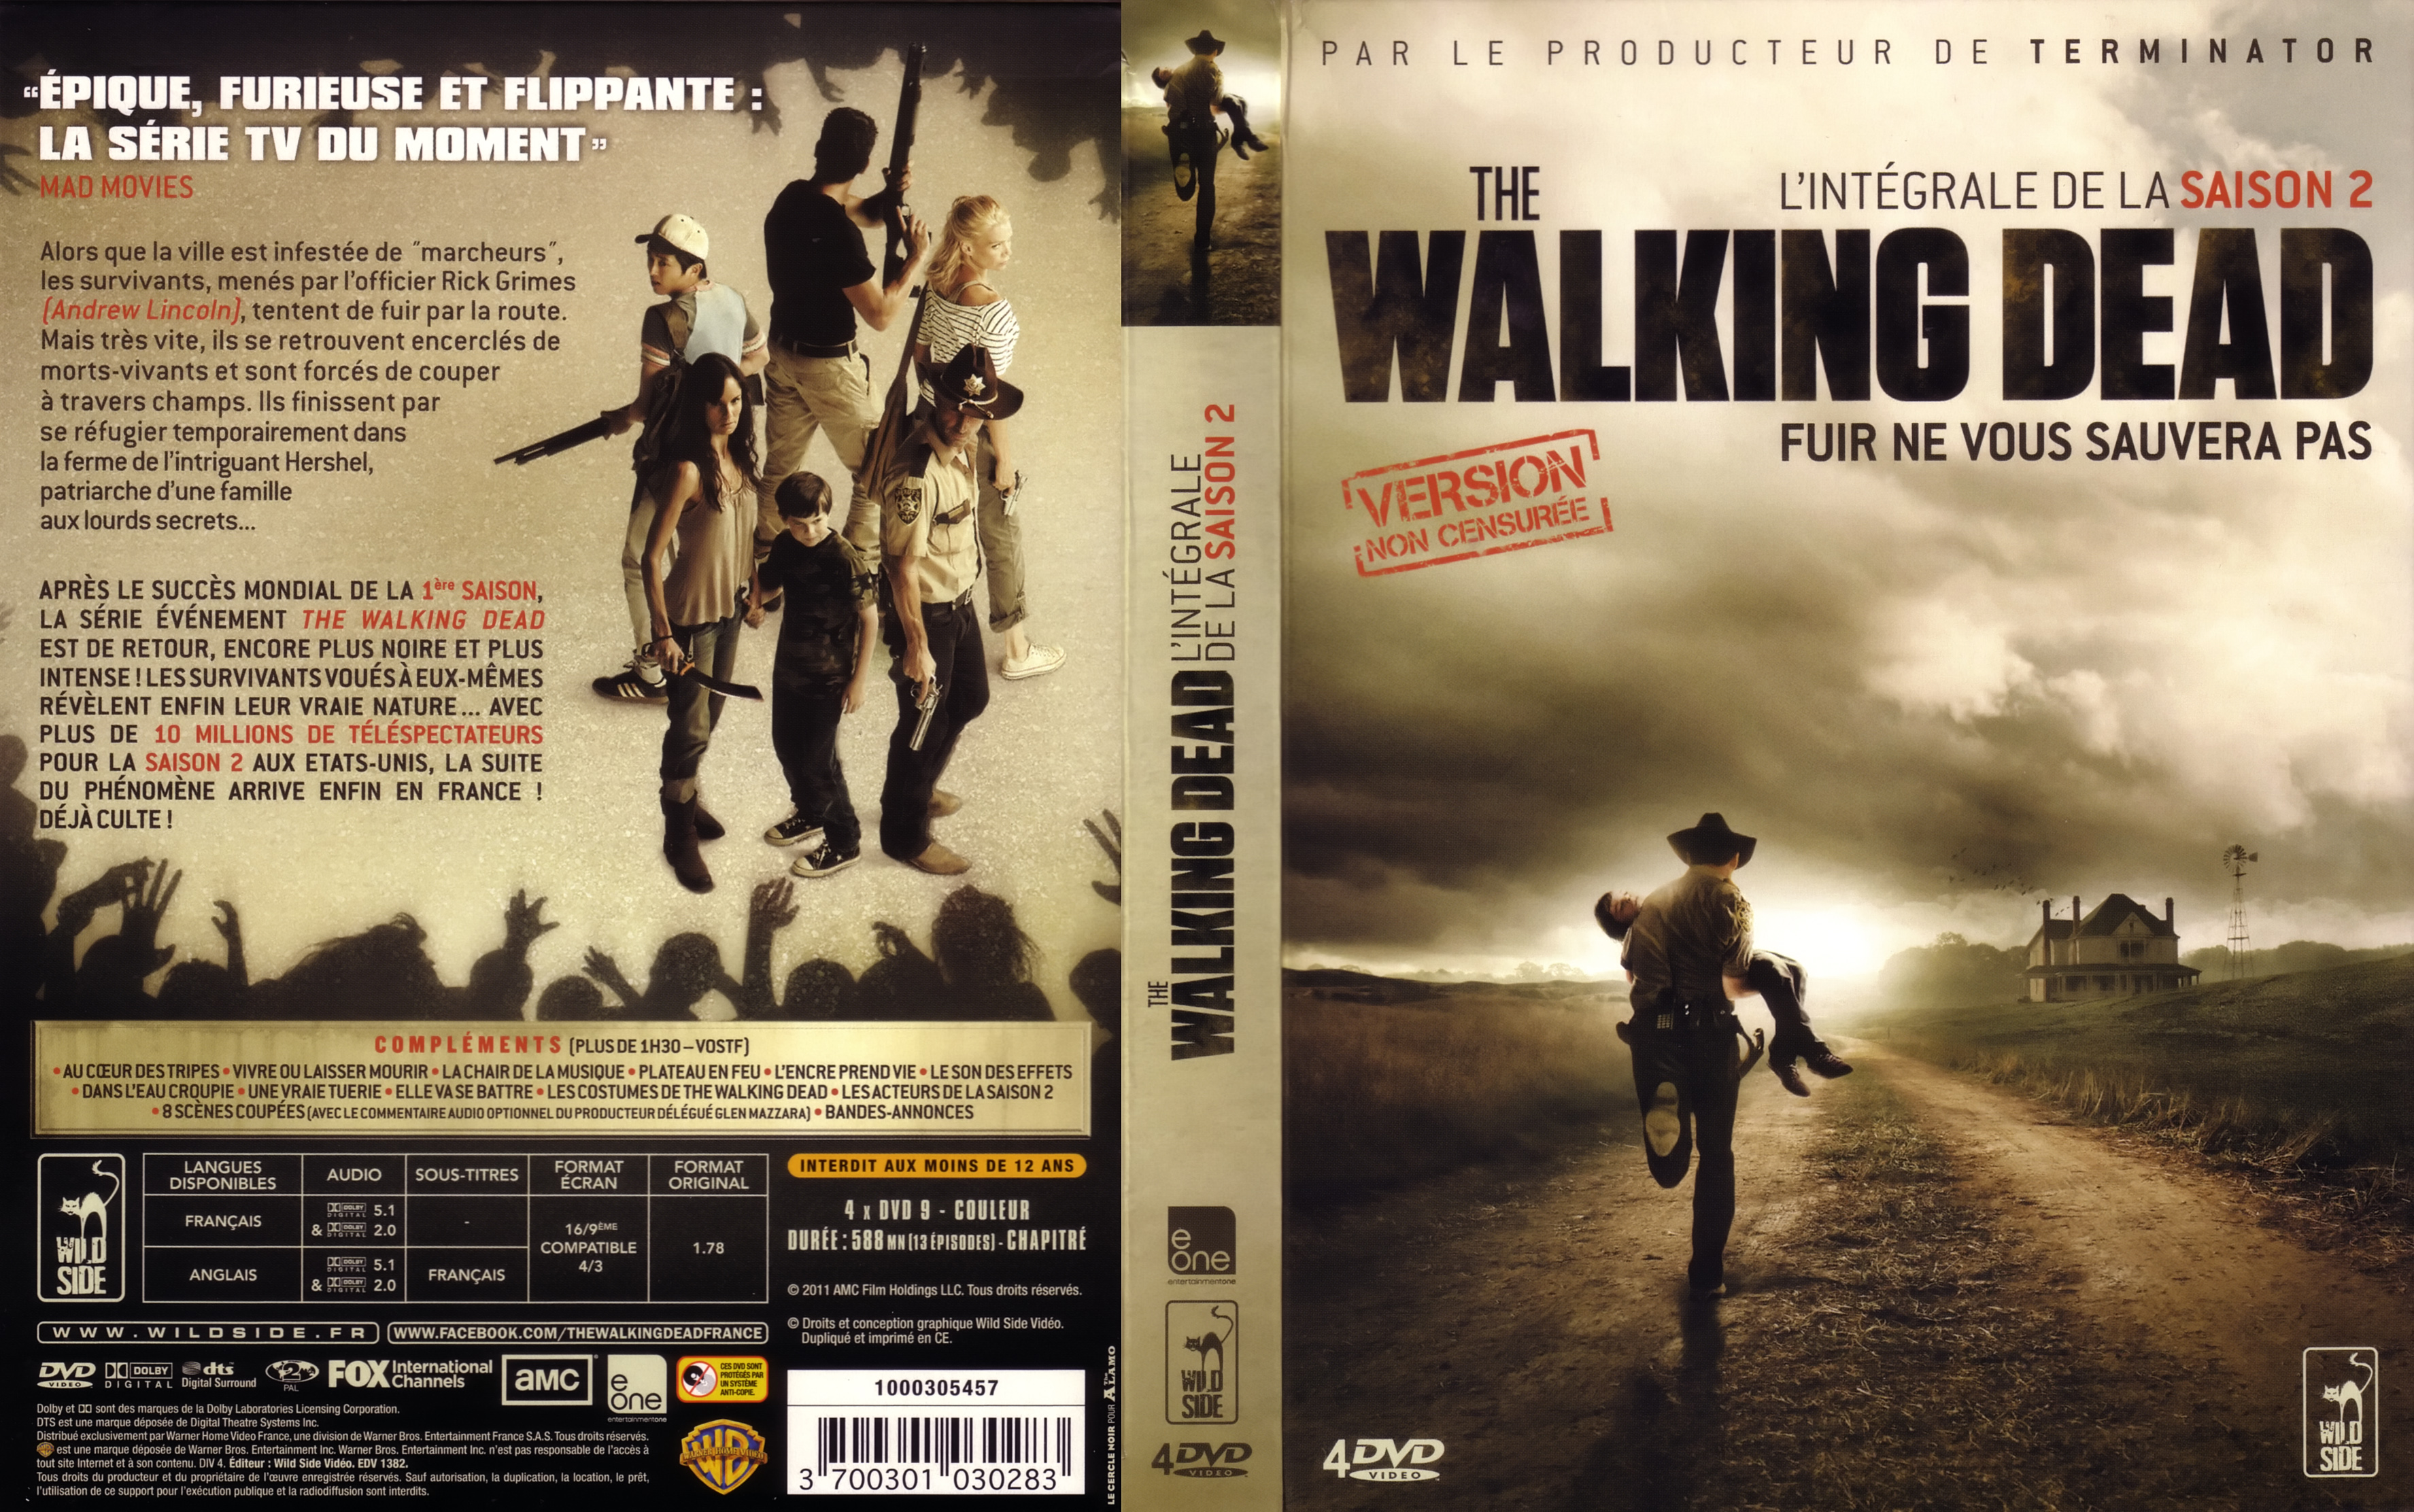 Jaquette DVD The Walking Dead Saison 2 COFFRET